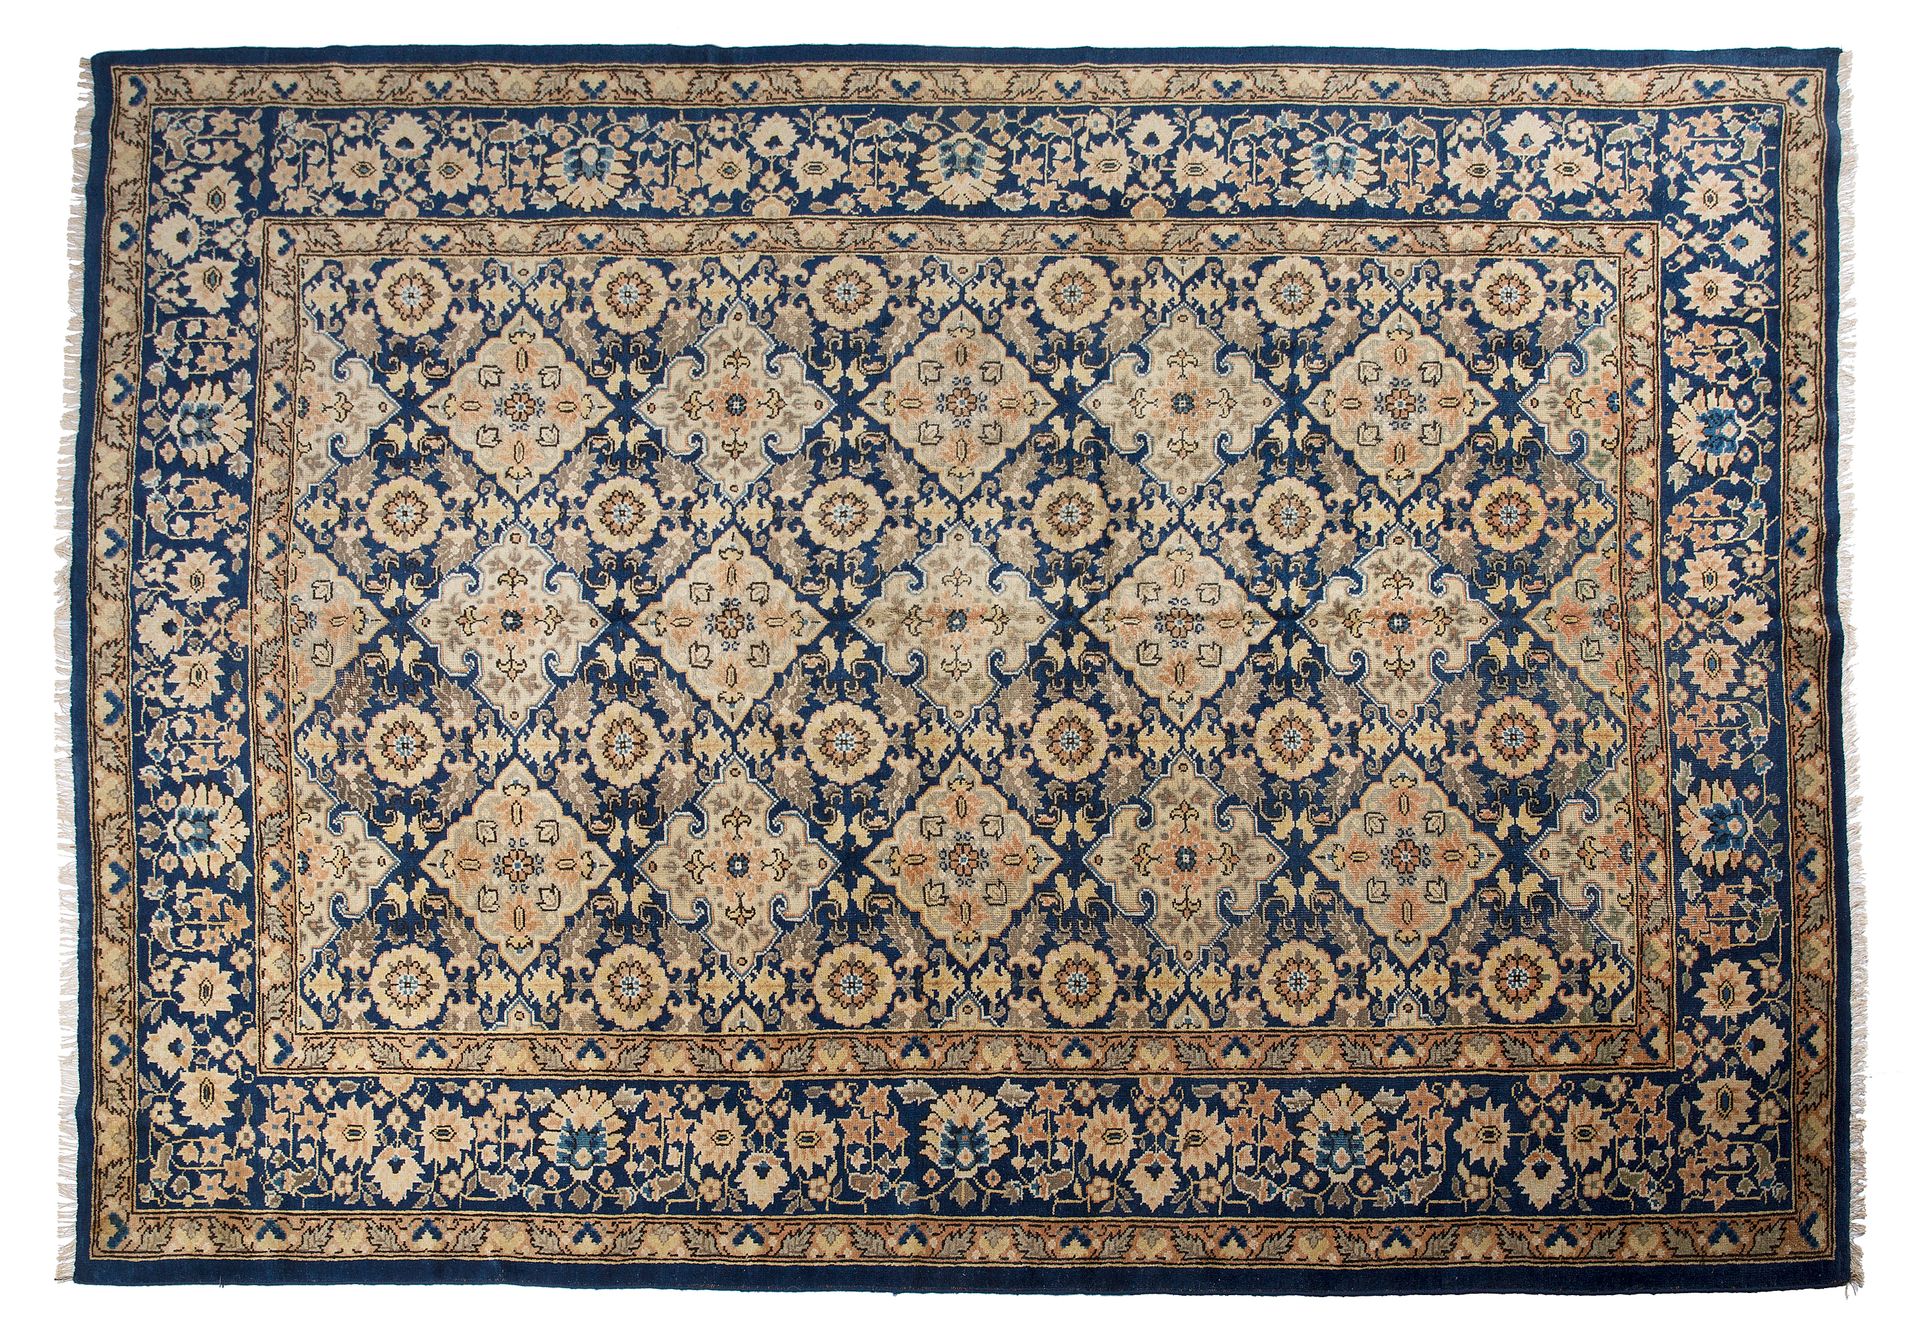 Null Teppich YARKAND (Zentralasien), Ende des 19. Jahrhunderts.

Jahrhundert. Ma&hellip;